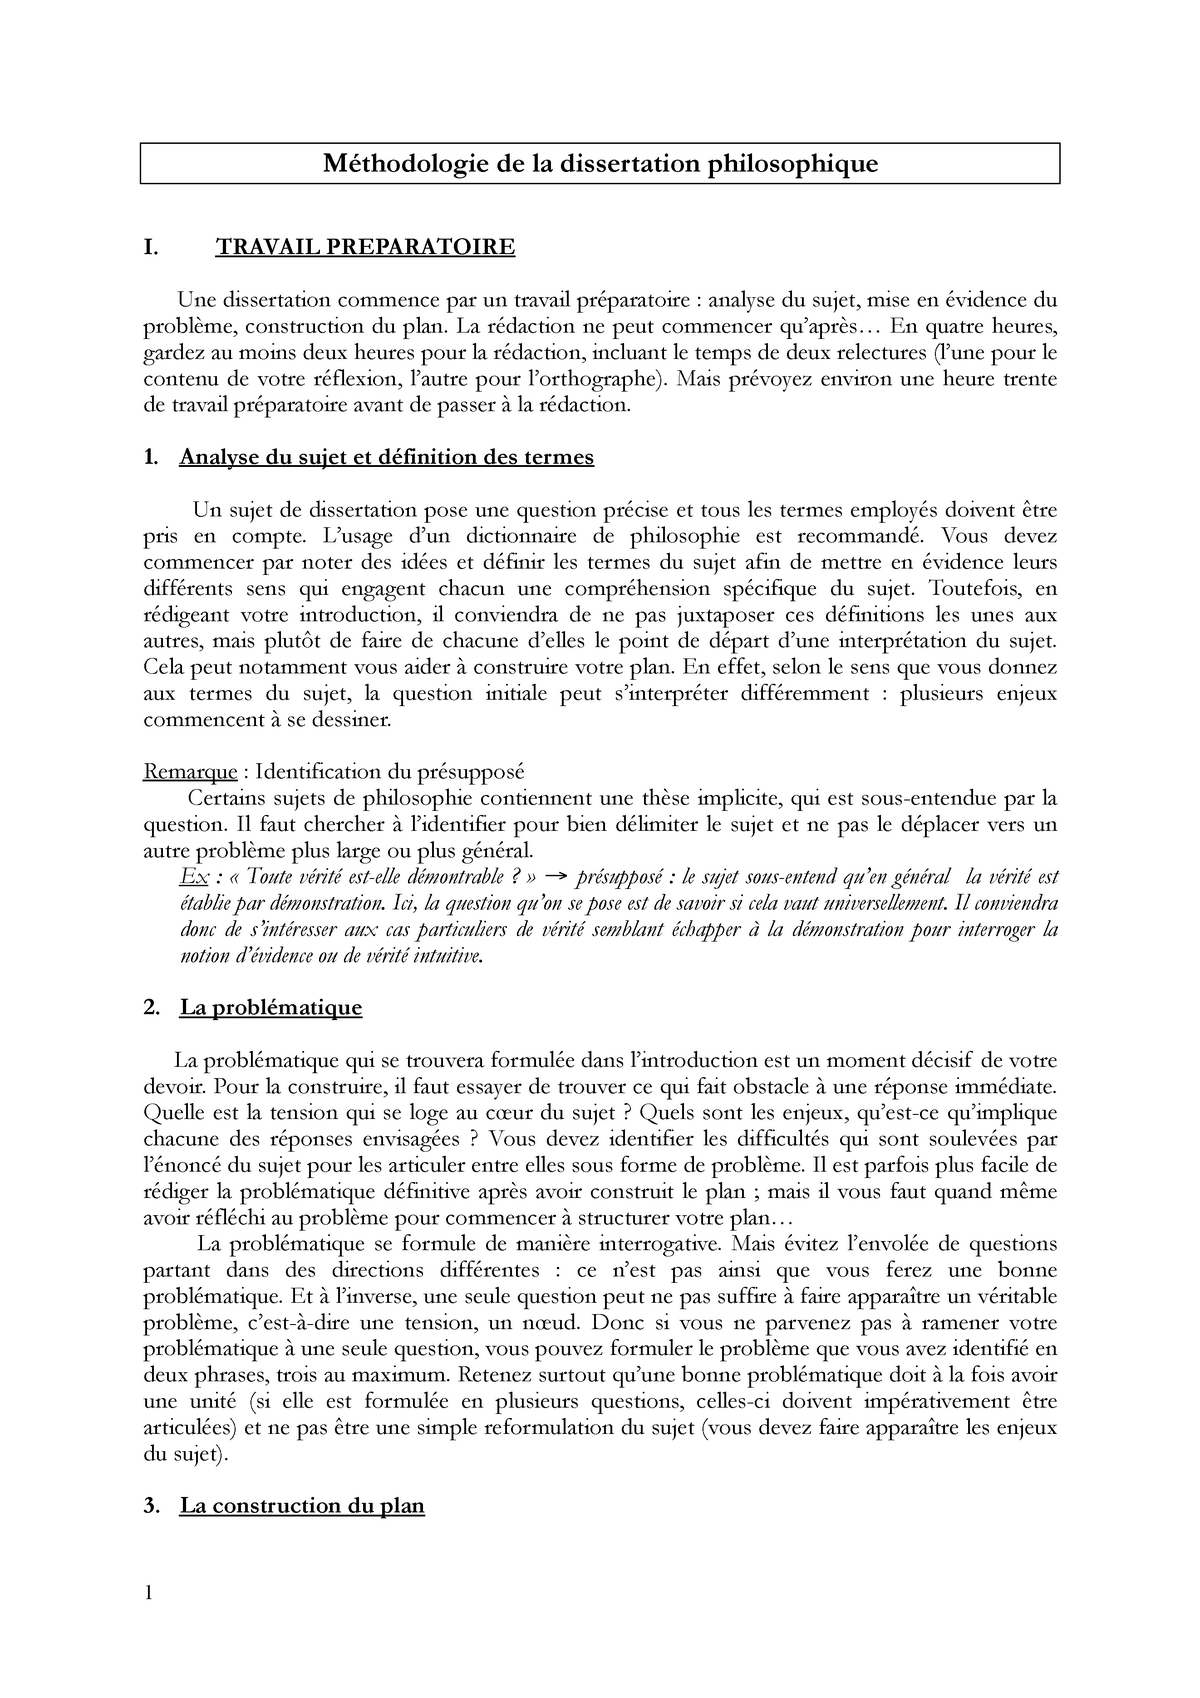 pdf methodologie dissertation philosophique